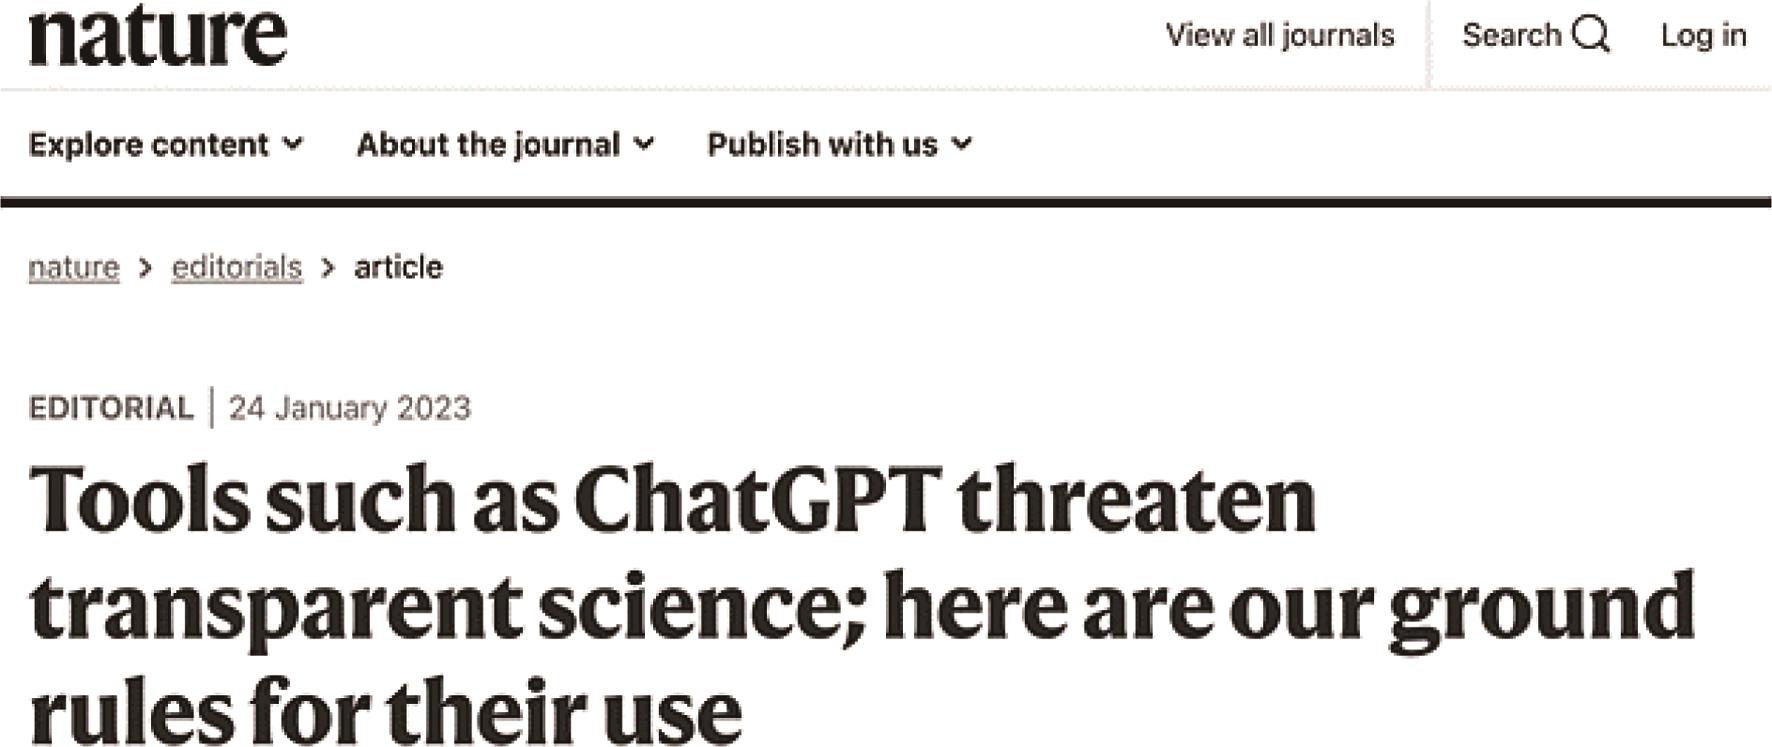 针对 ChatGPT，Nature 团队及很多出版商、平台均认为，该工具无法对科学论文的完整性及内容本身负责（图片来源Nature官网https://www.nature.com/articles/d41586-023-00191-1）。